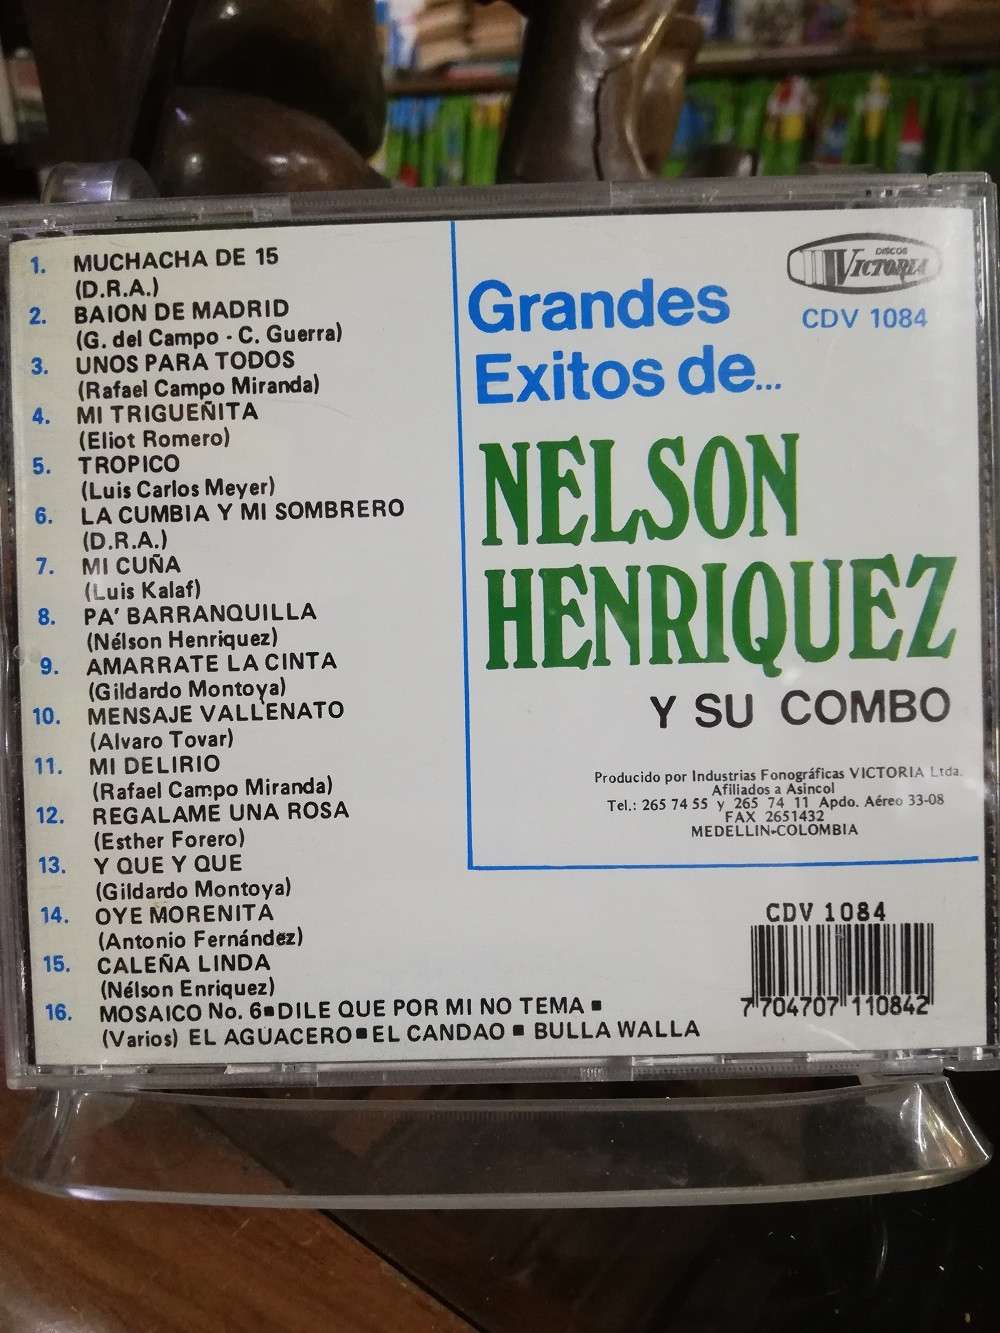 Imagen CD NELSON HENRIQUEZ Y SU COMBO - GRANDES EXITOS VOL. 3 2